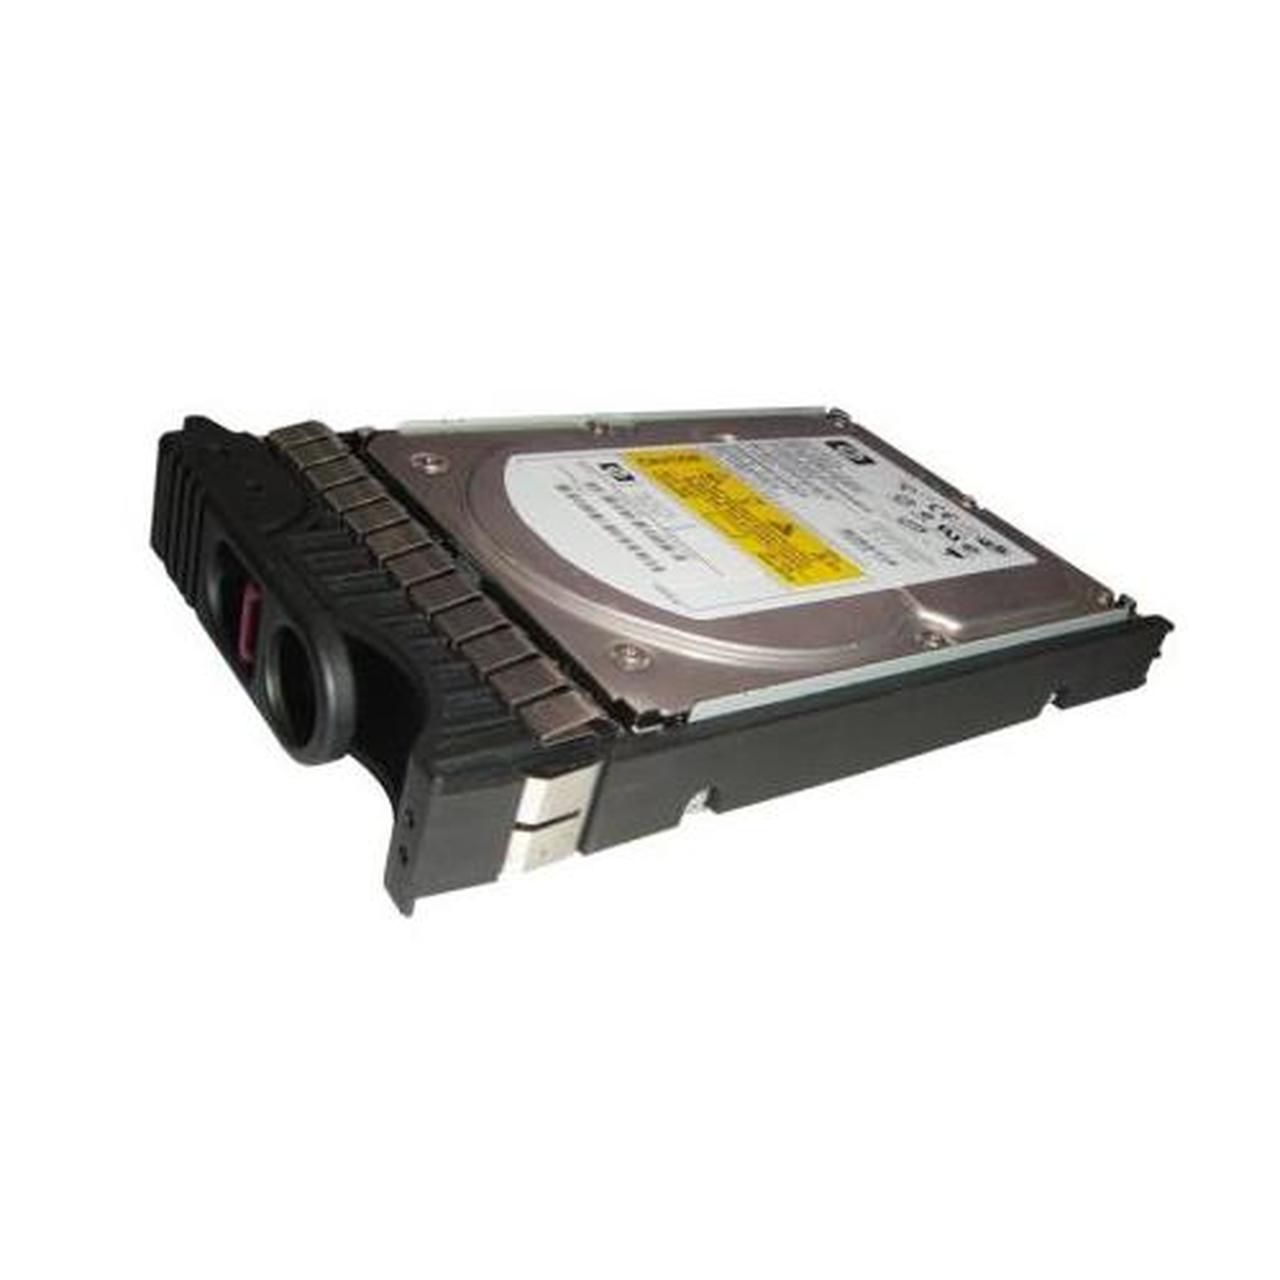 A9898-69002 | HP 146GB 10000RPM Ultra 320 SCSI 3.5 8MB Cache Hot Swap Hard Drive